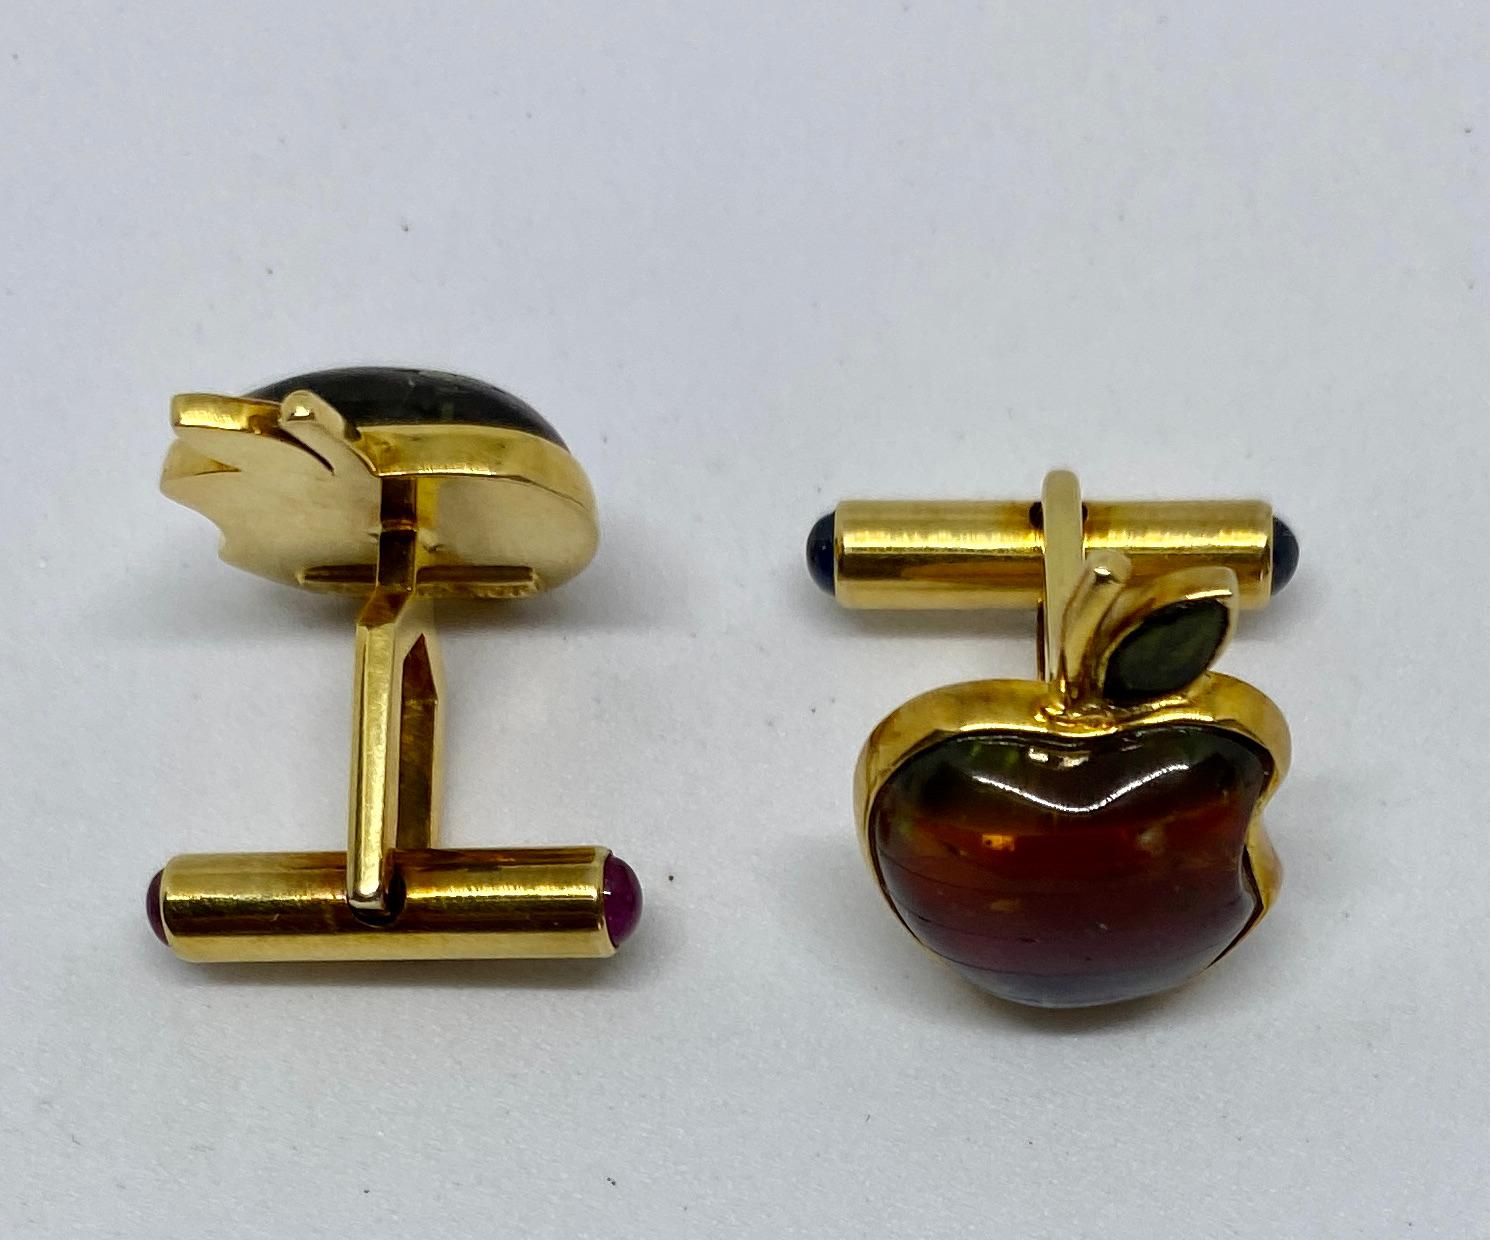 Contemporary Apple Computer Logo Cufflinks in 18K Gold with Gemstones by von Zadora-Gerlof For Sale